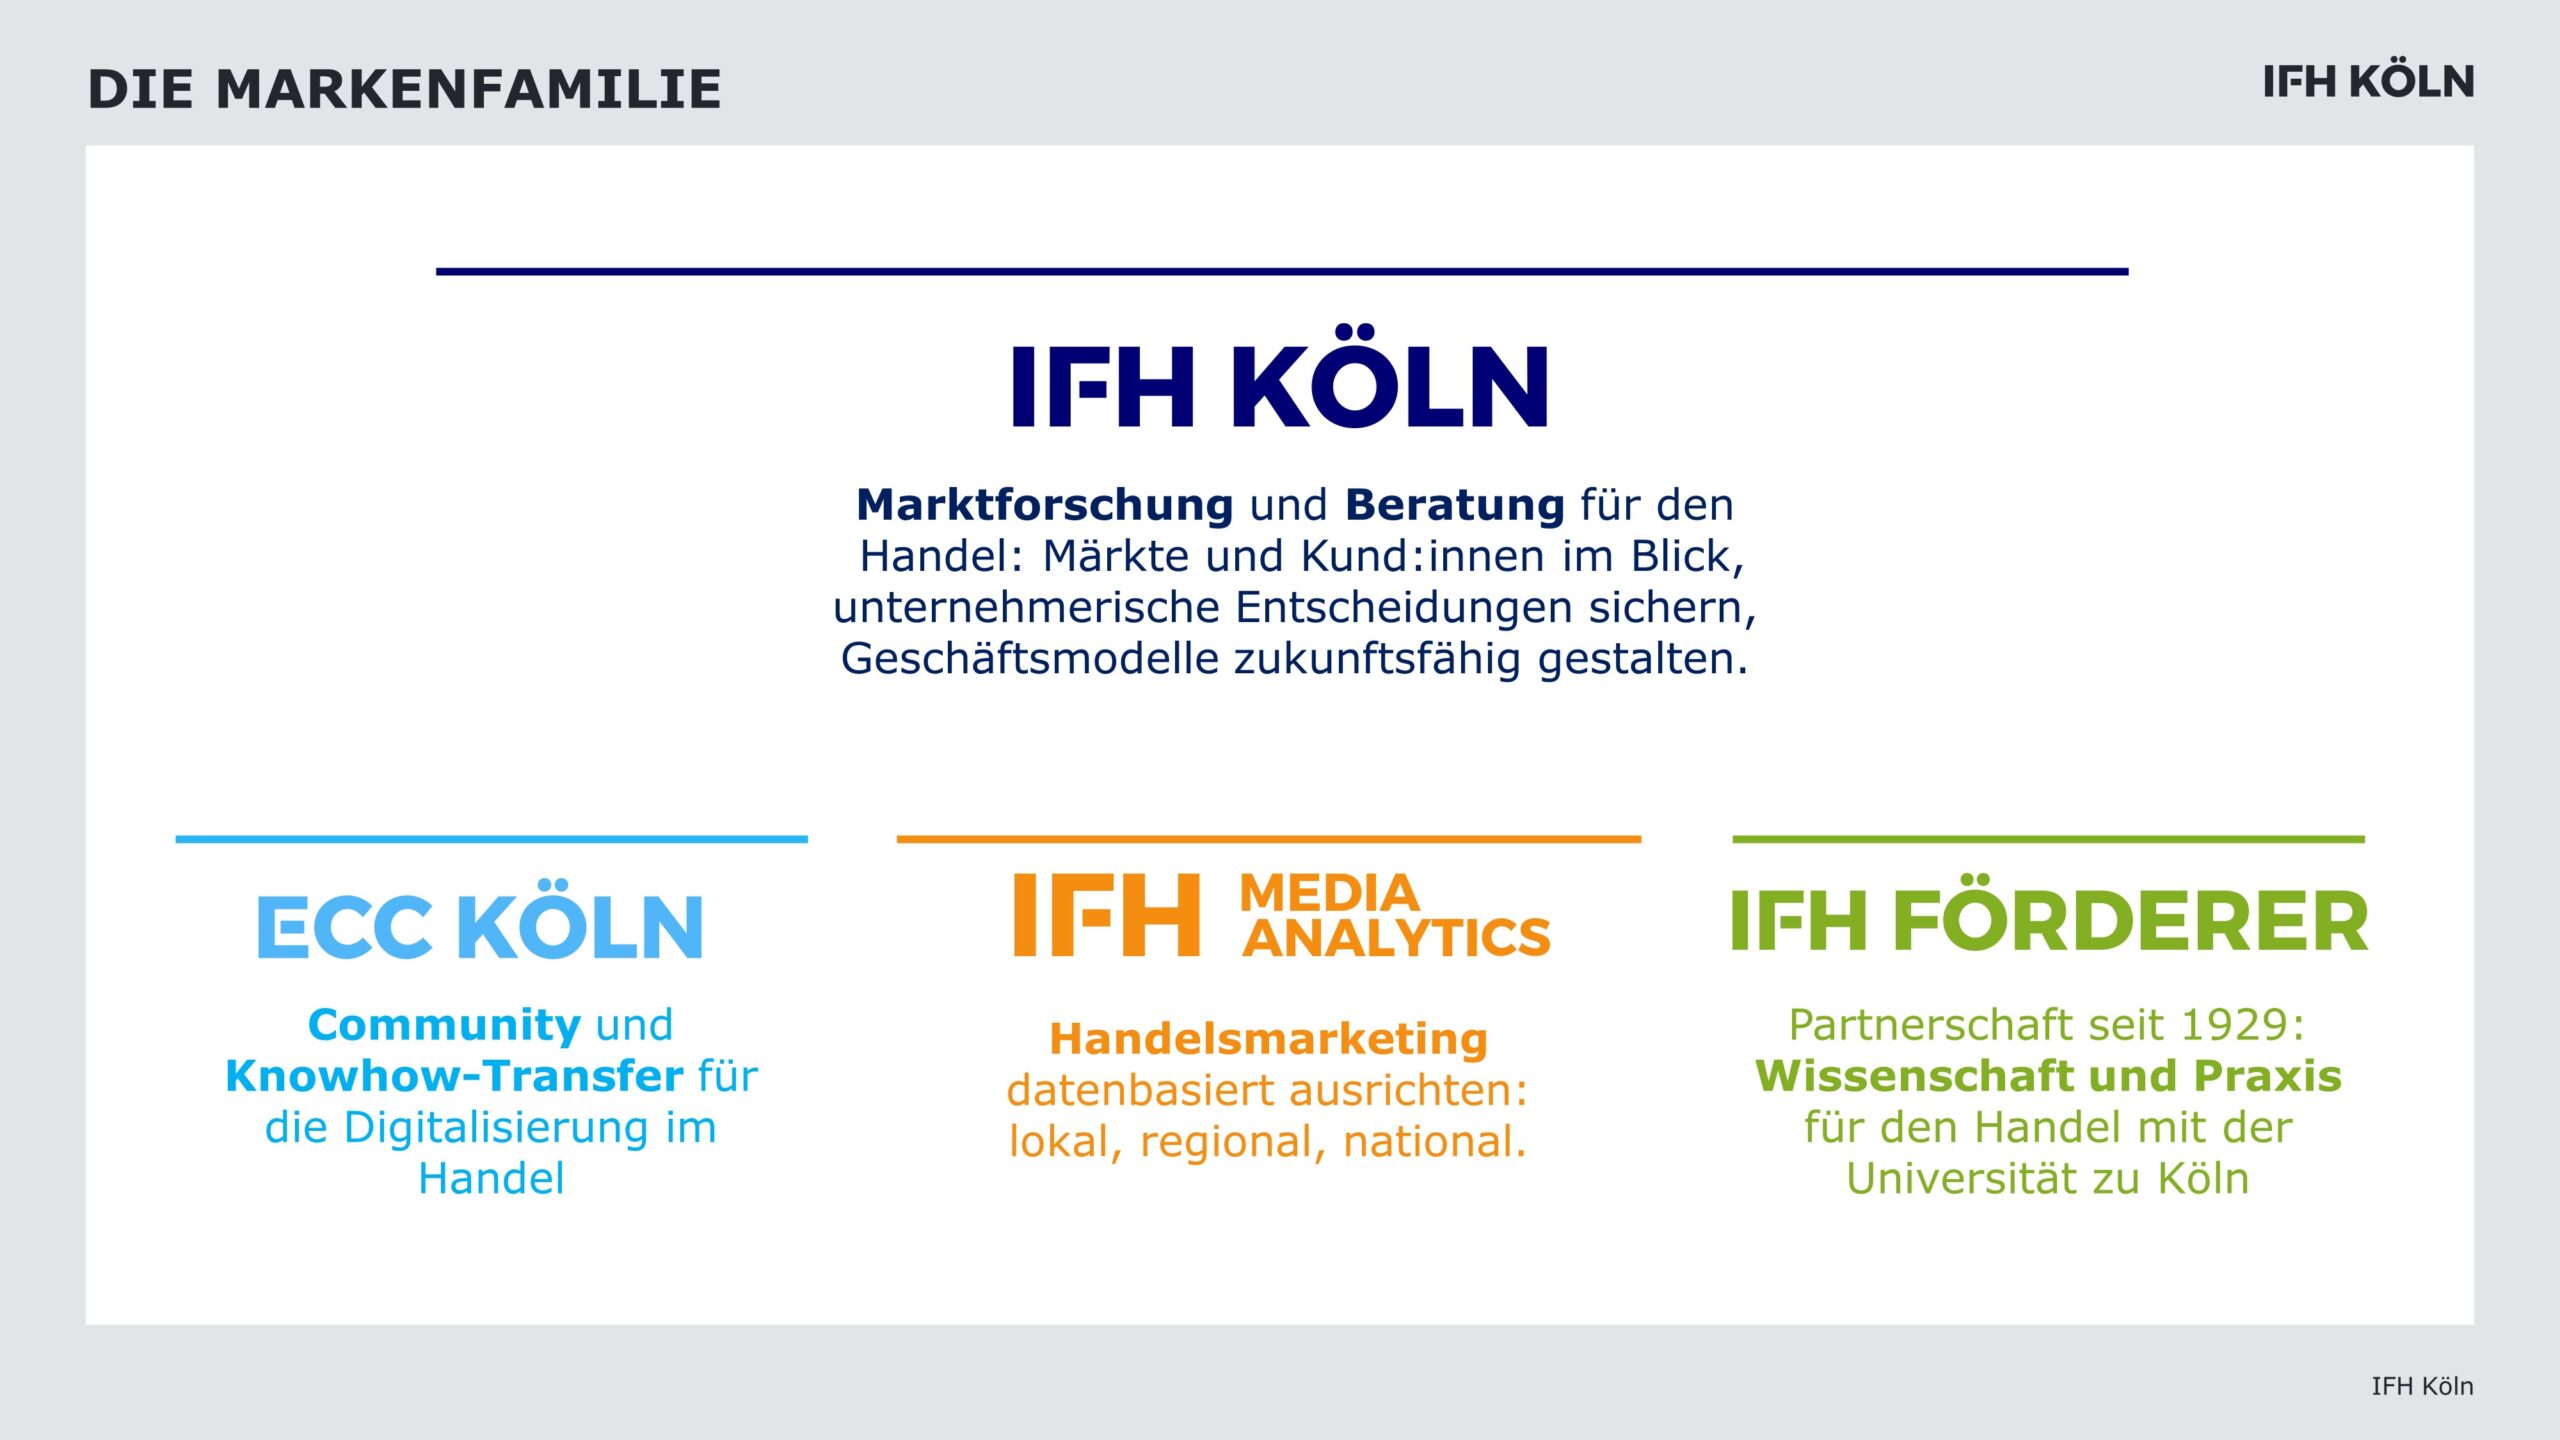 Die Markenfamilie des IFH KÖLN mit den Tochtermarken ECC KÖLN, IFH MEDIA ANALYTICS und IFH FÖRDERER